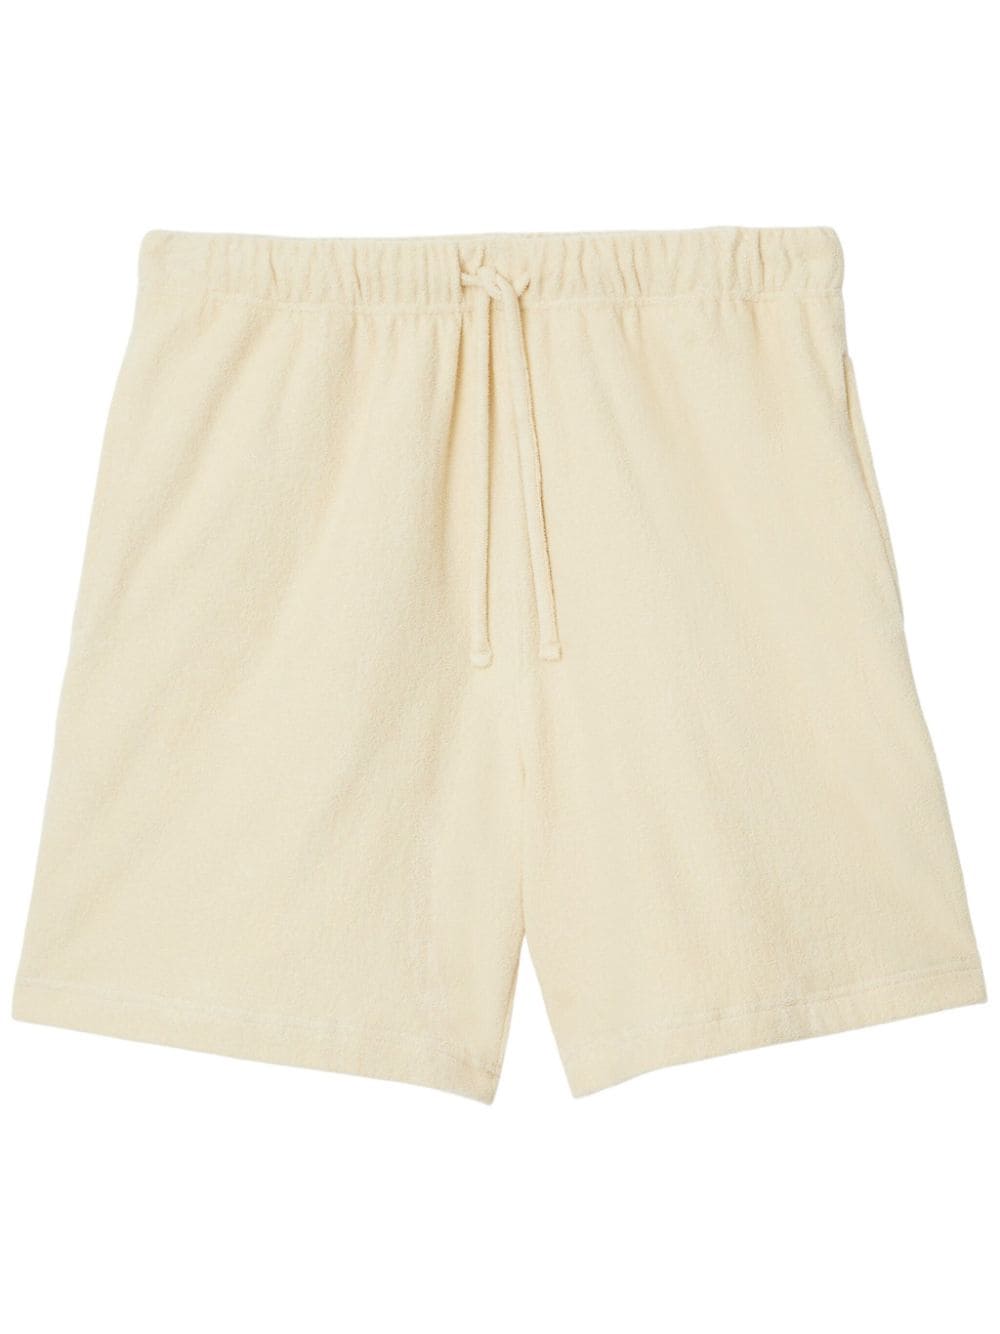 Burberry EKD cotton shorts - Neutrals von Burberry